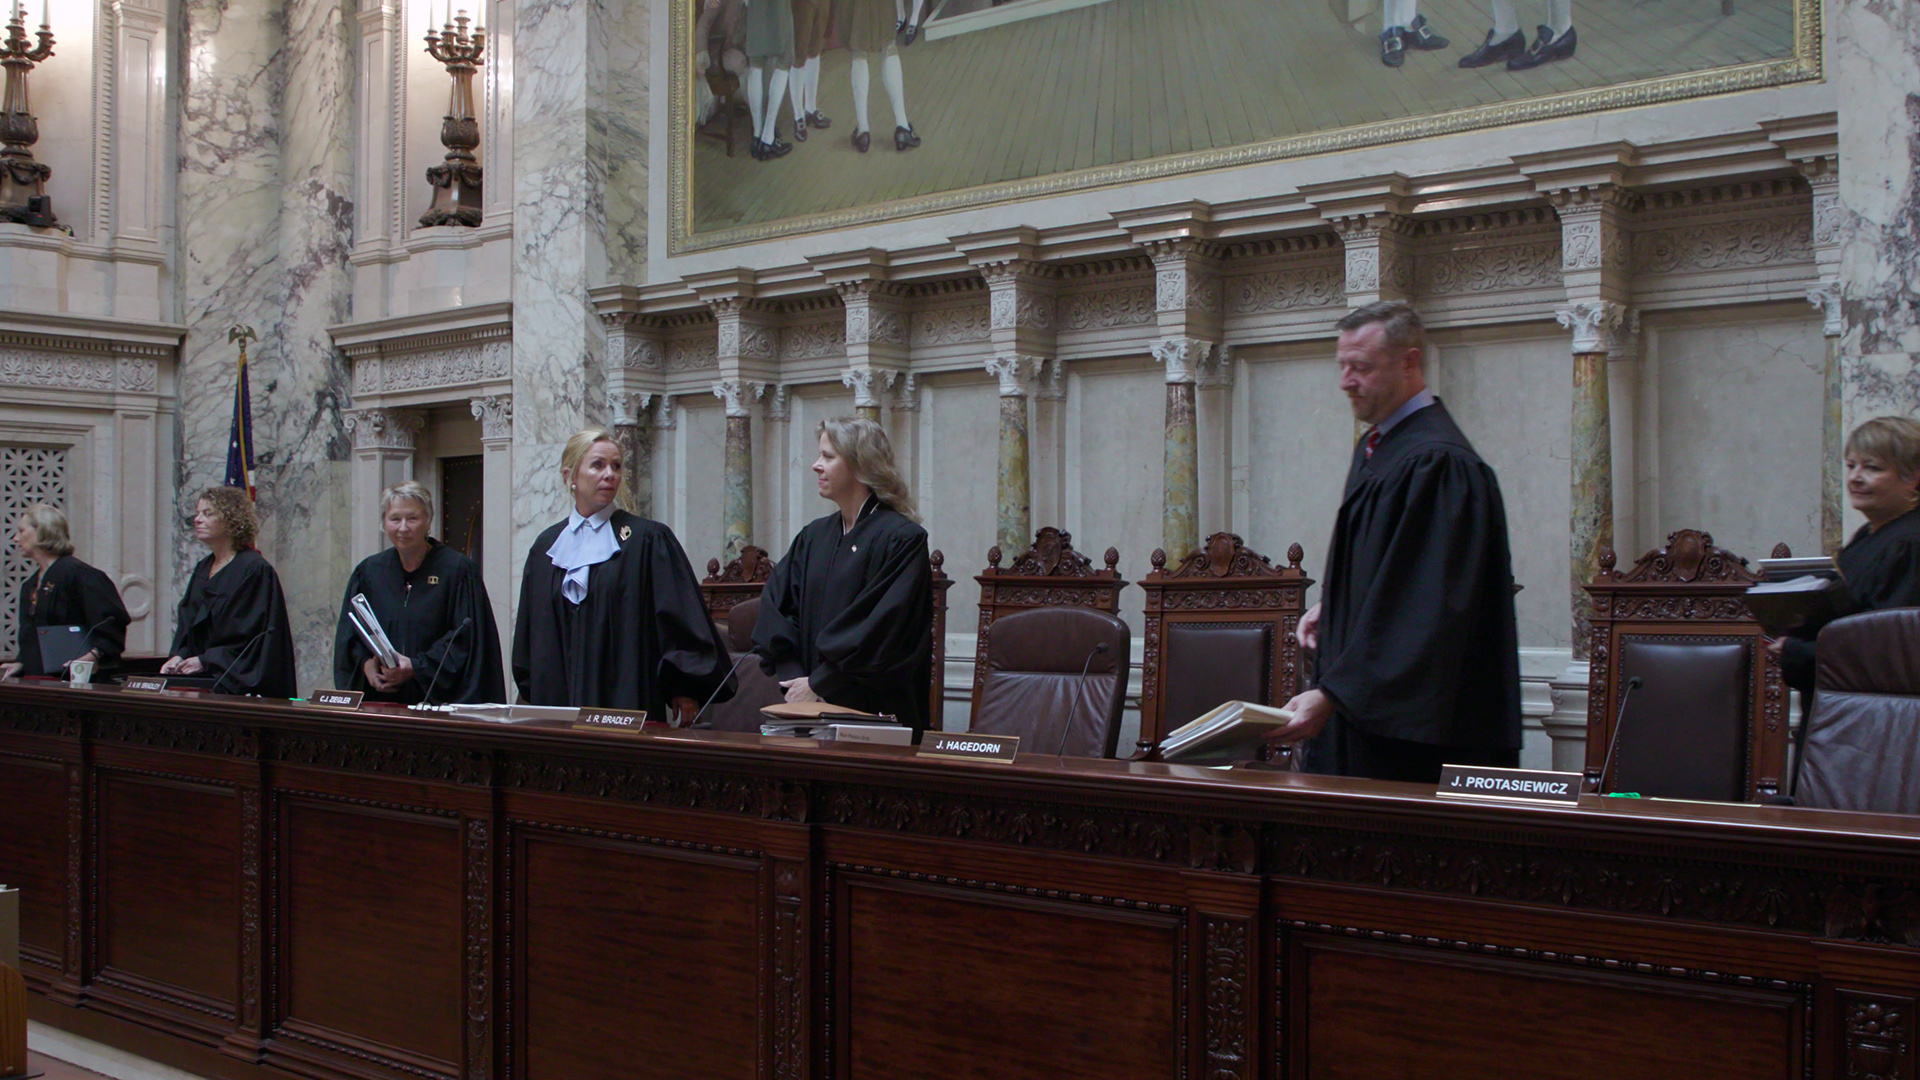 Circuit judge enforces courtroom dress code, News